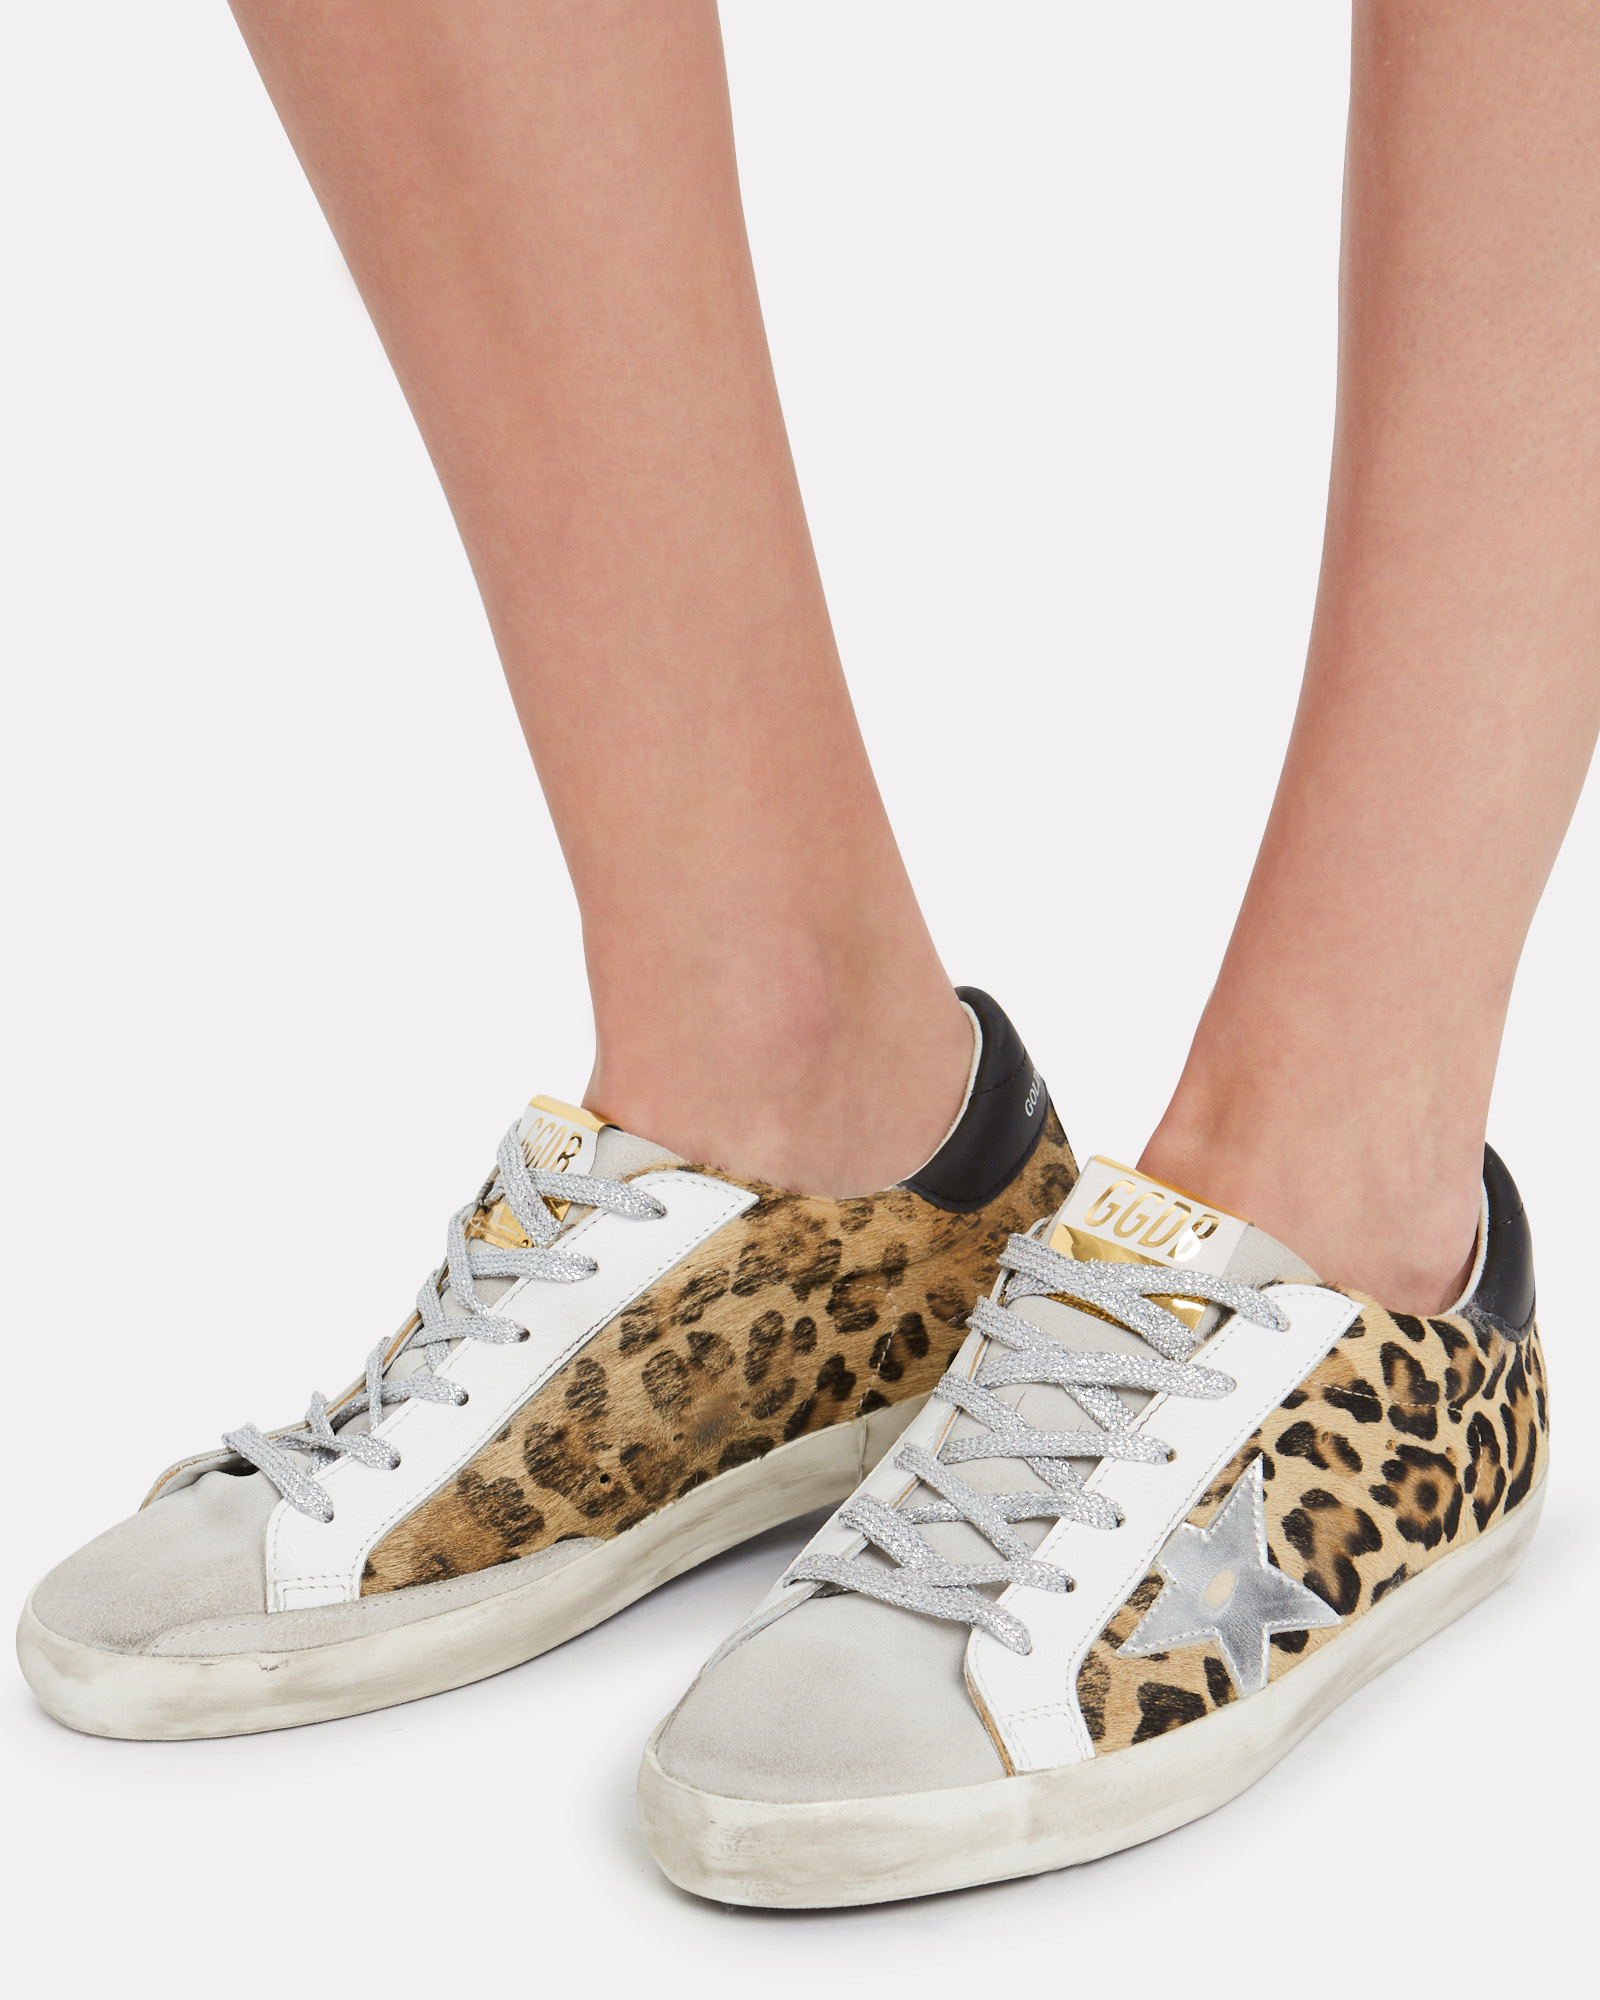 Golden Goose | Superstar Leopard Low-Top Sneakers | INTERMIX®